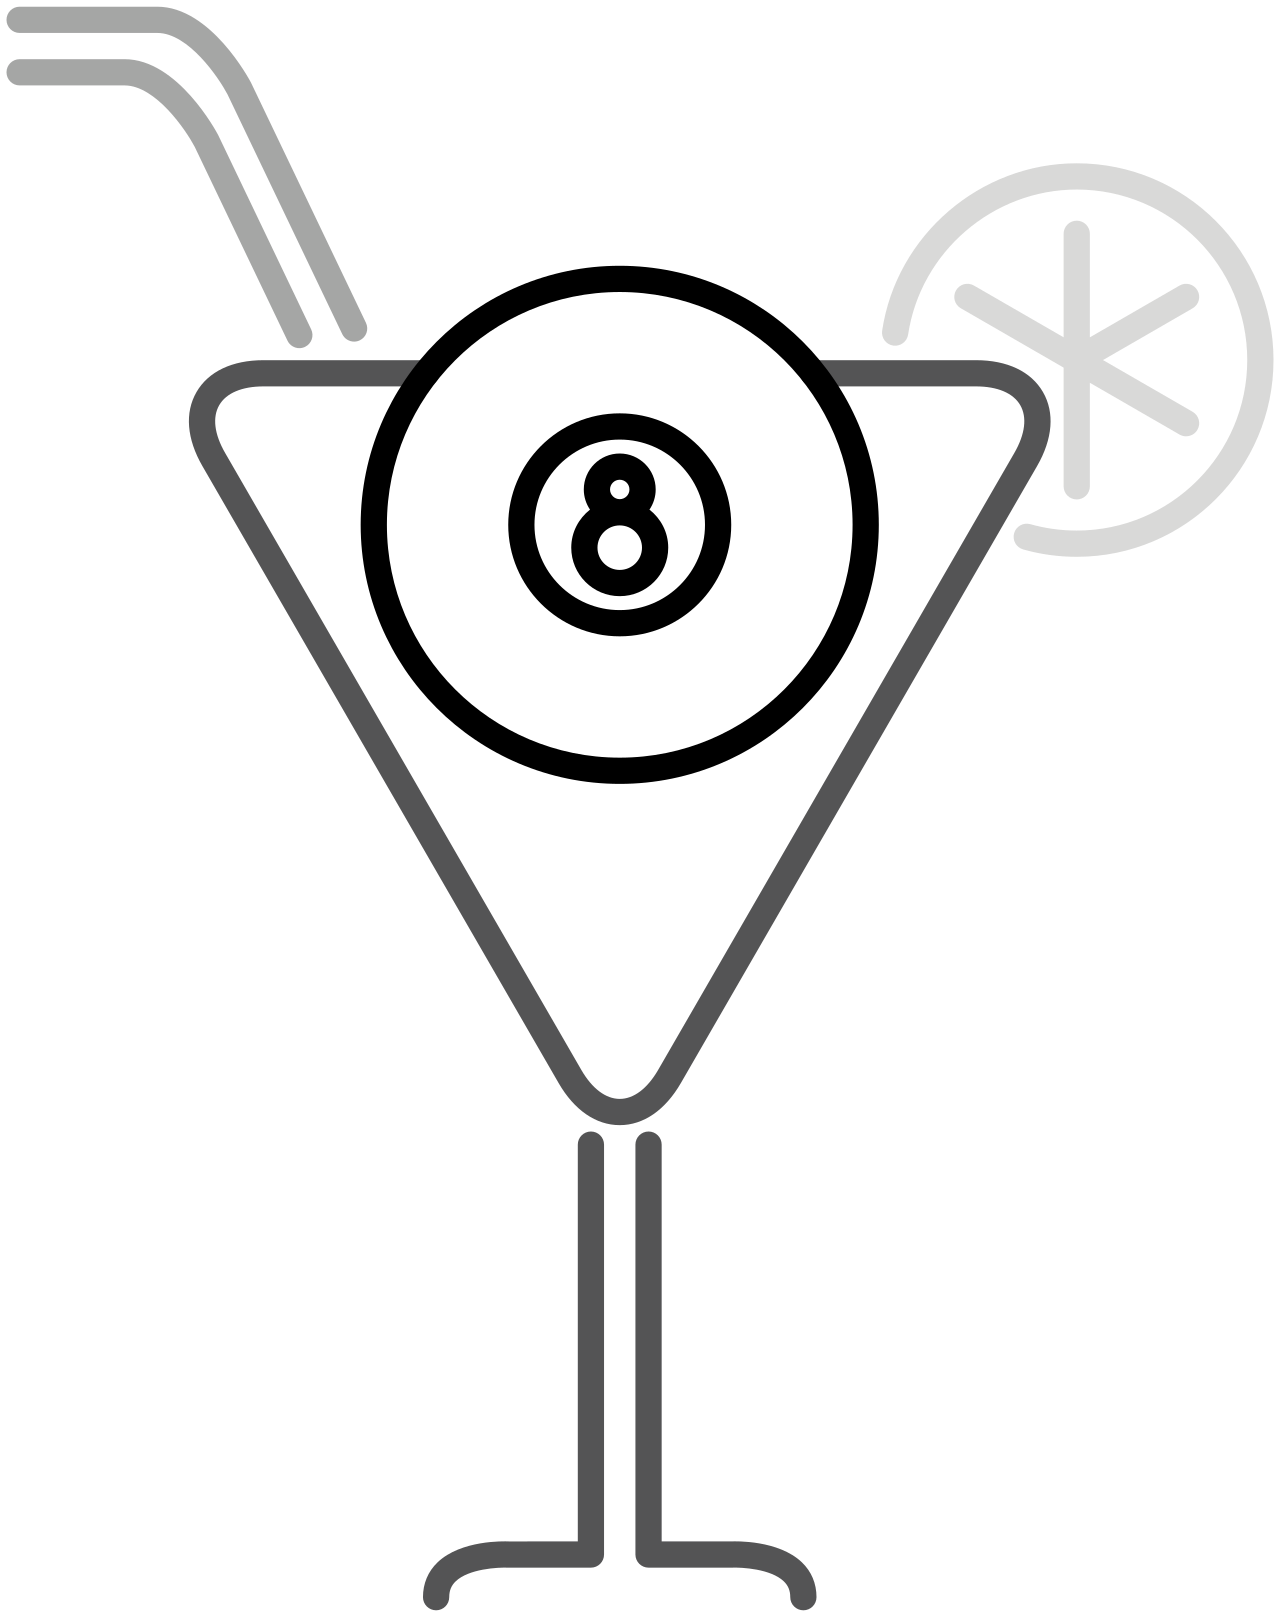 Sam The Bartender's logo